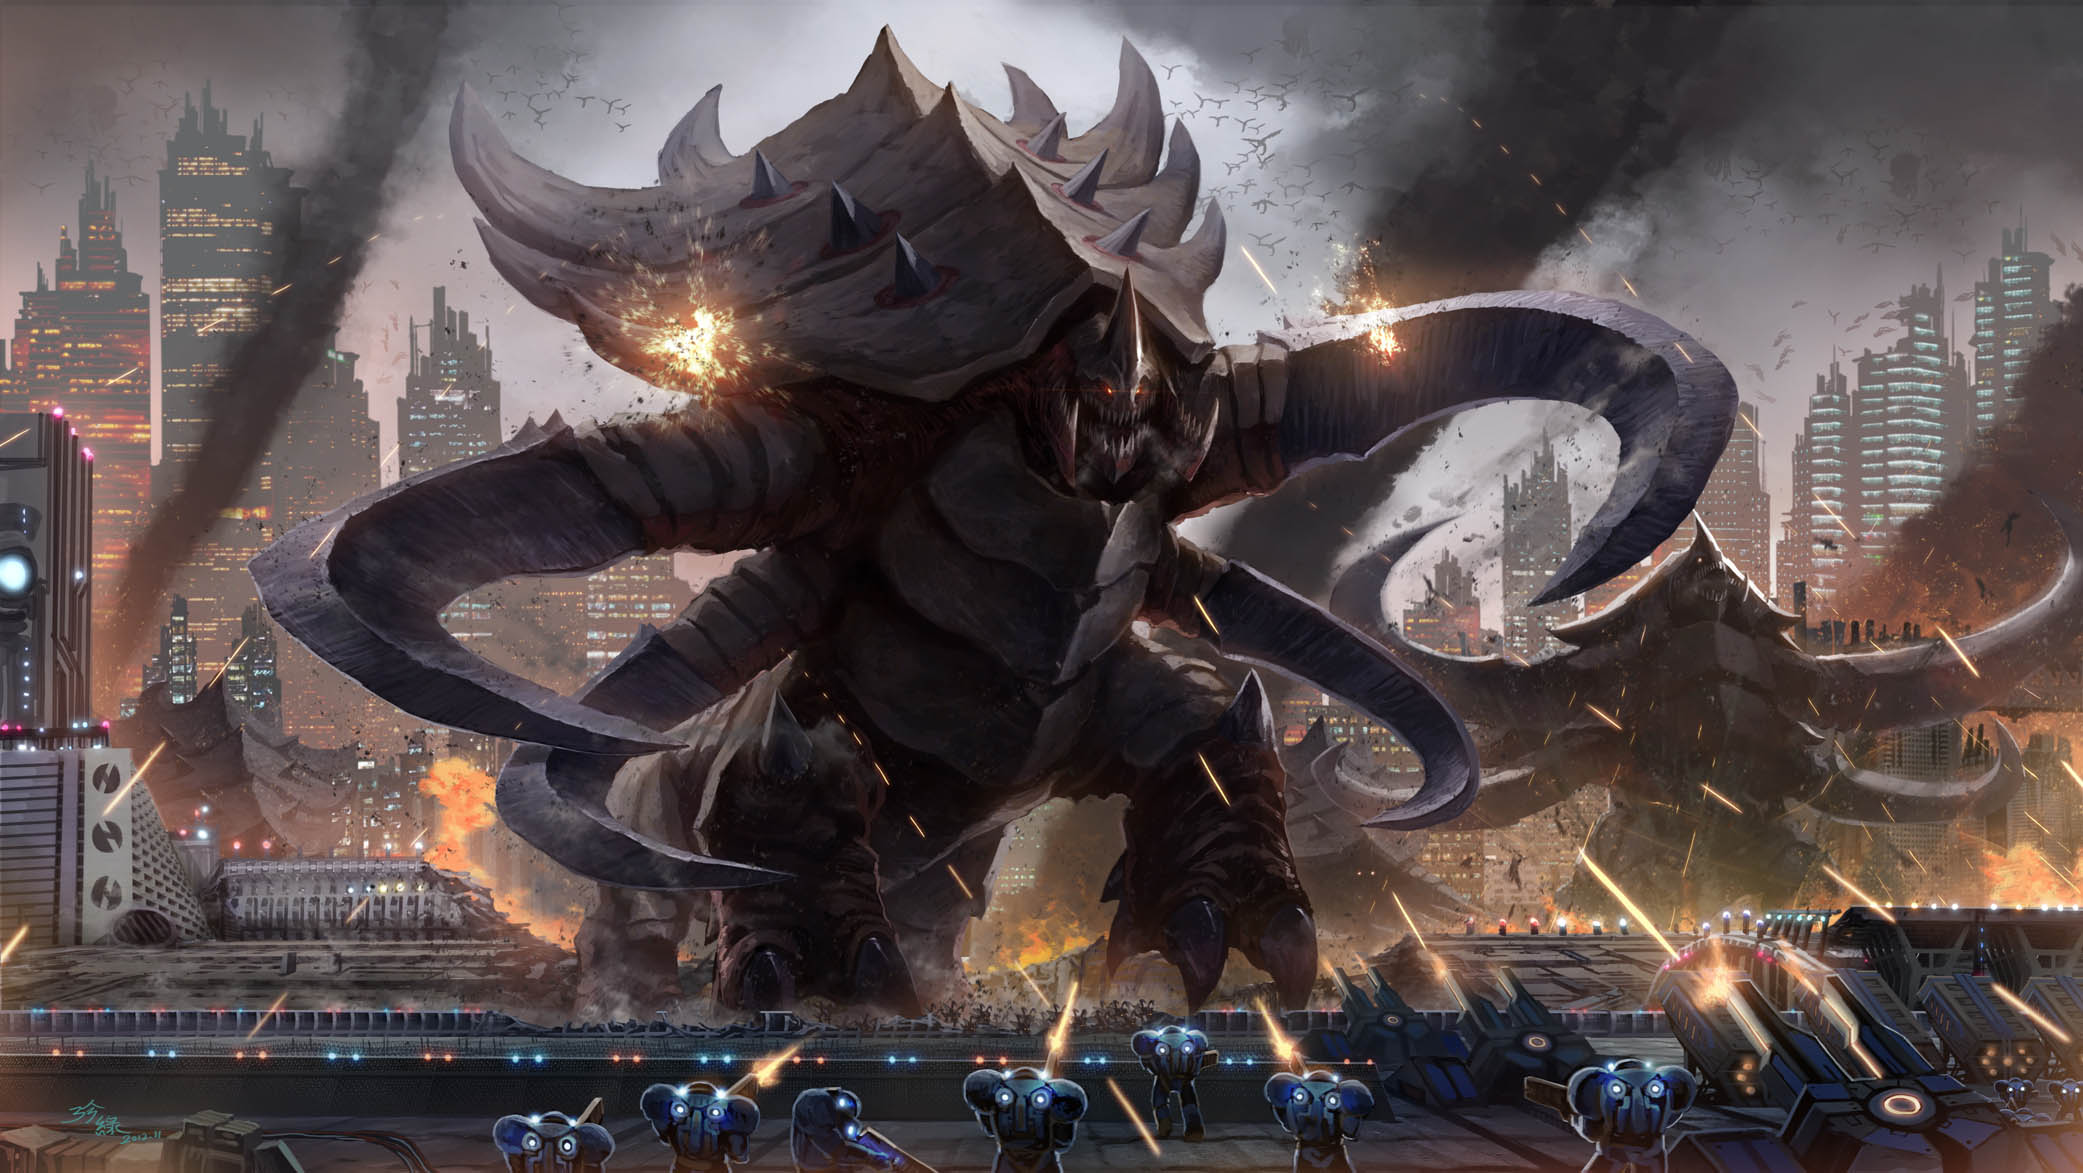 Starcraft Monsters Creatures Battle War Soldiers Warriors Weapons Guns